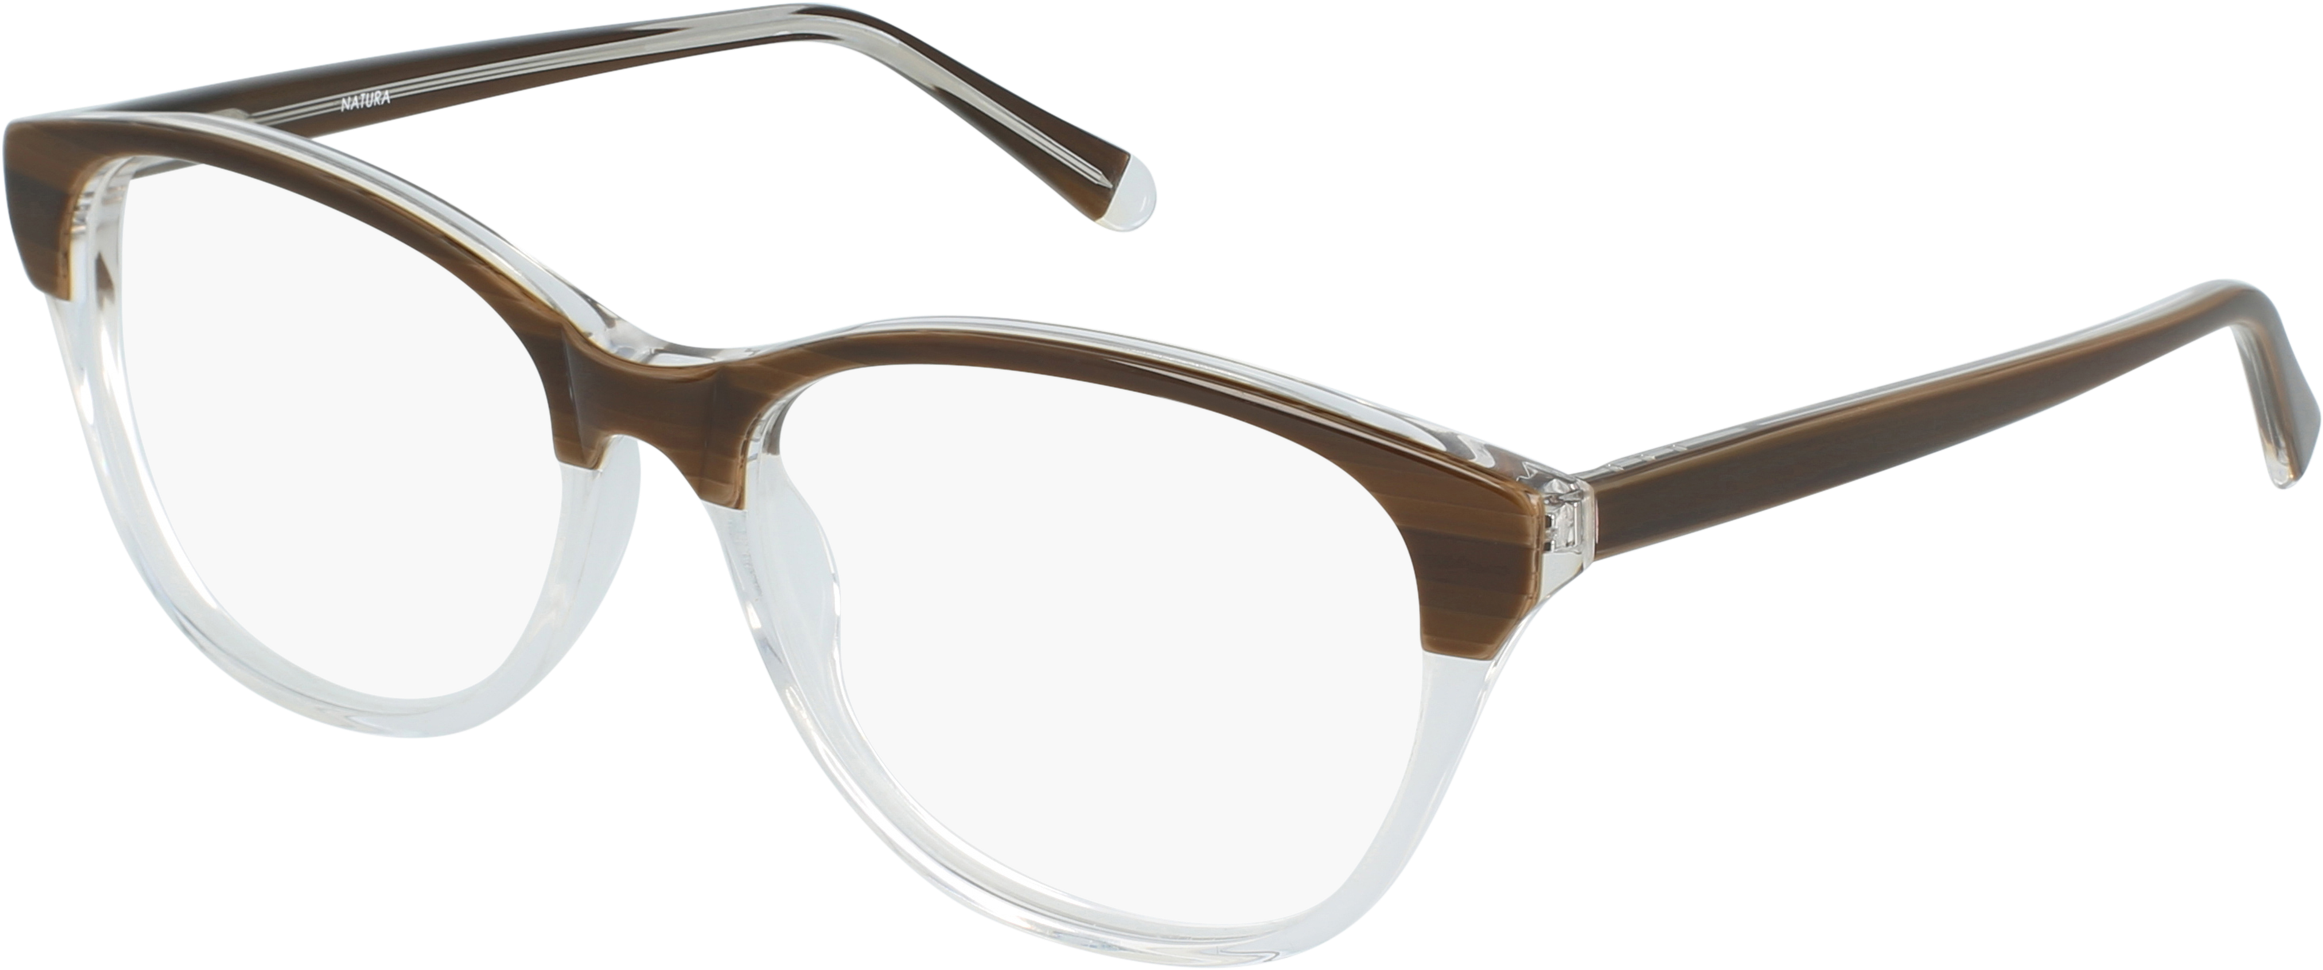 N N 01 Women's Eyeglasses - Glasses Clipart (2500x1400), Png Download